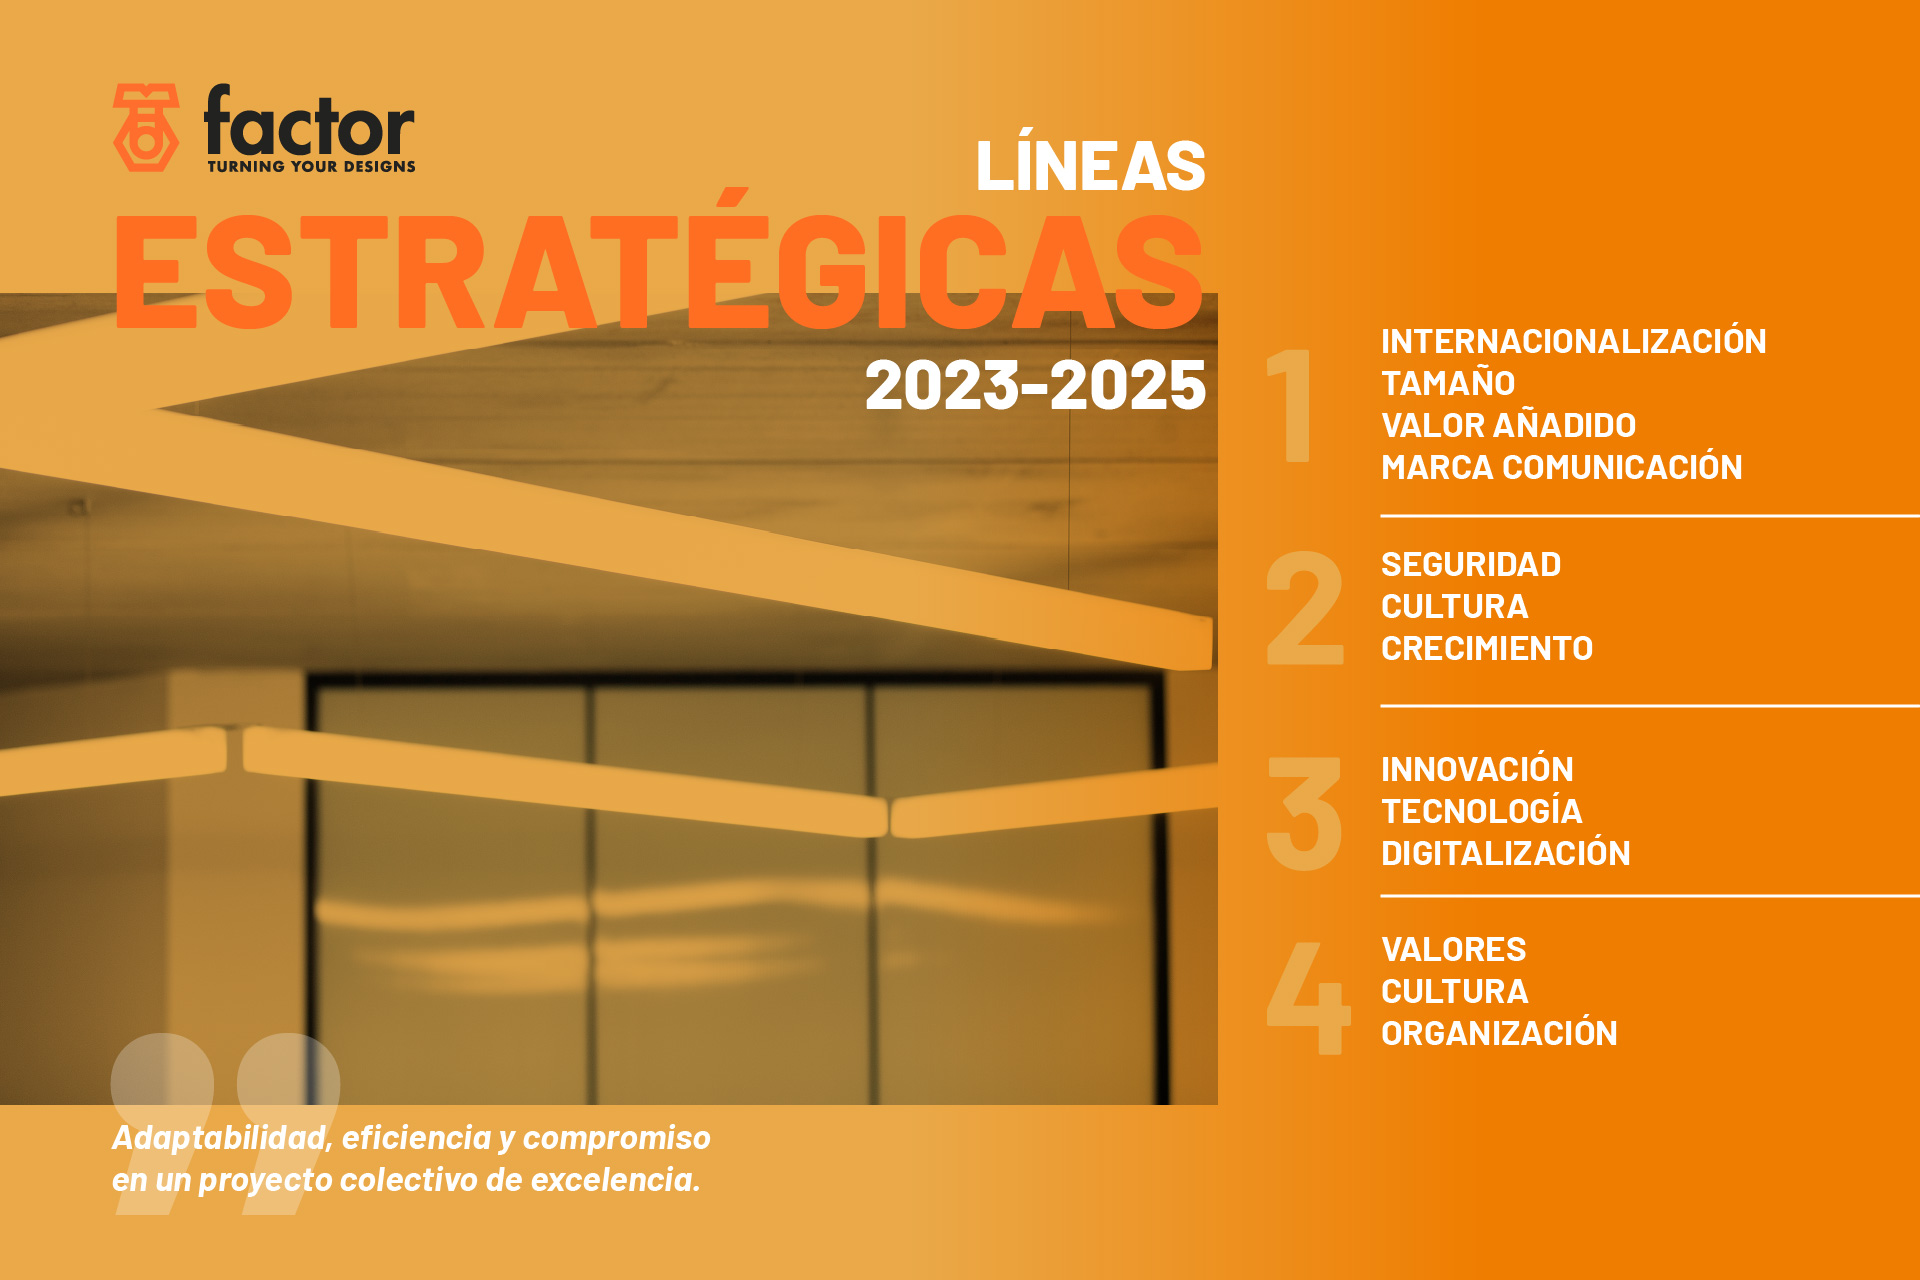 LÍNEAS ESTRATÉGICAS FACTOR 2023-25